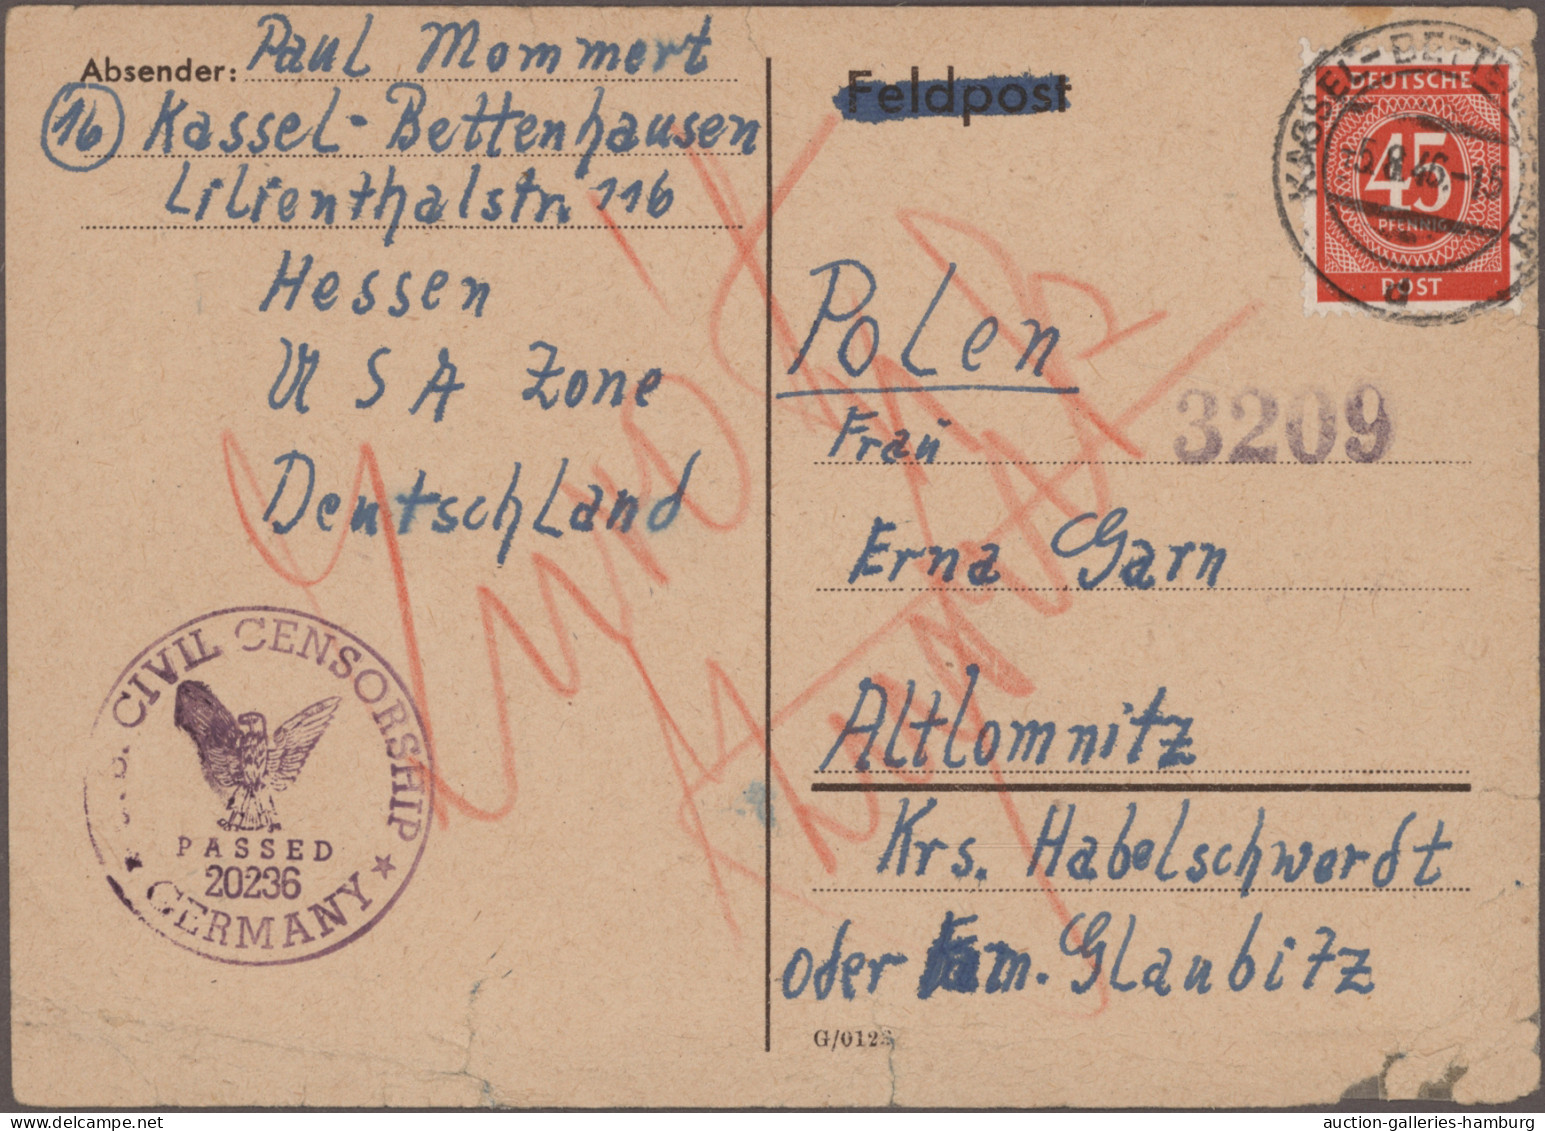 Deutschland ab 1945 - Gebühr Bezahlt: 1945/1948, Sammlung von ca. 70 Briefen und